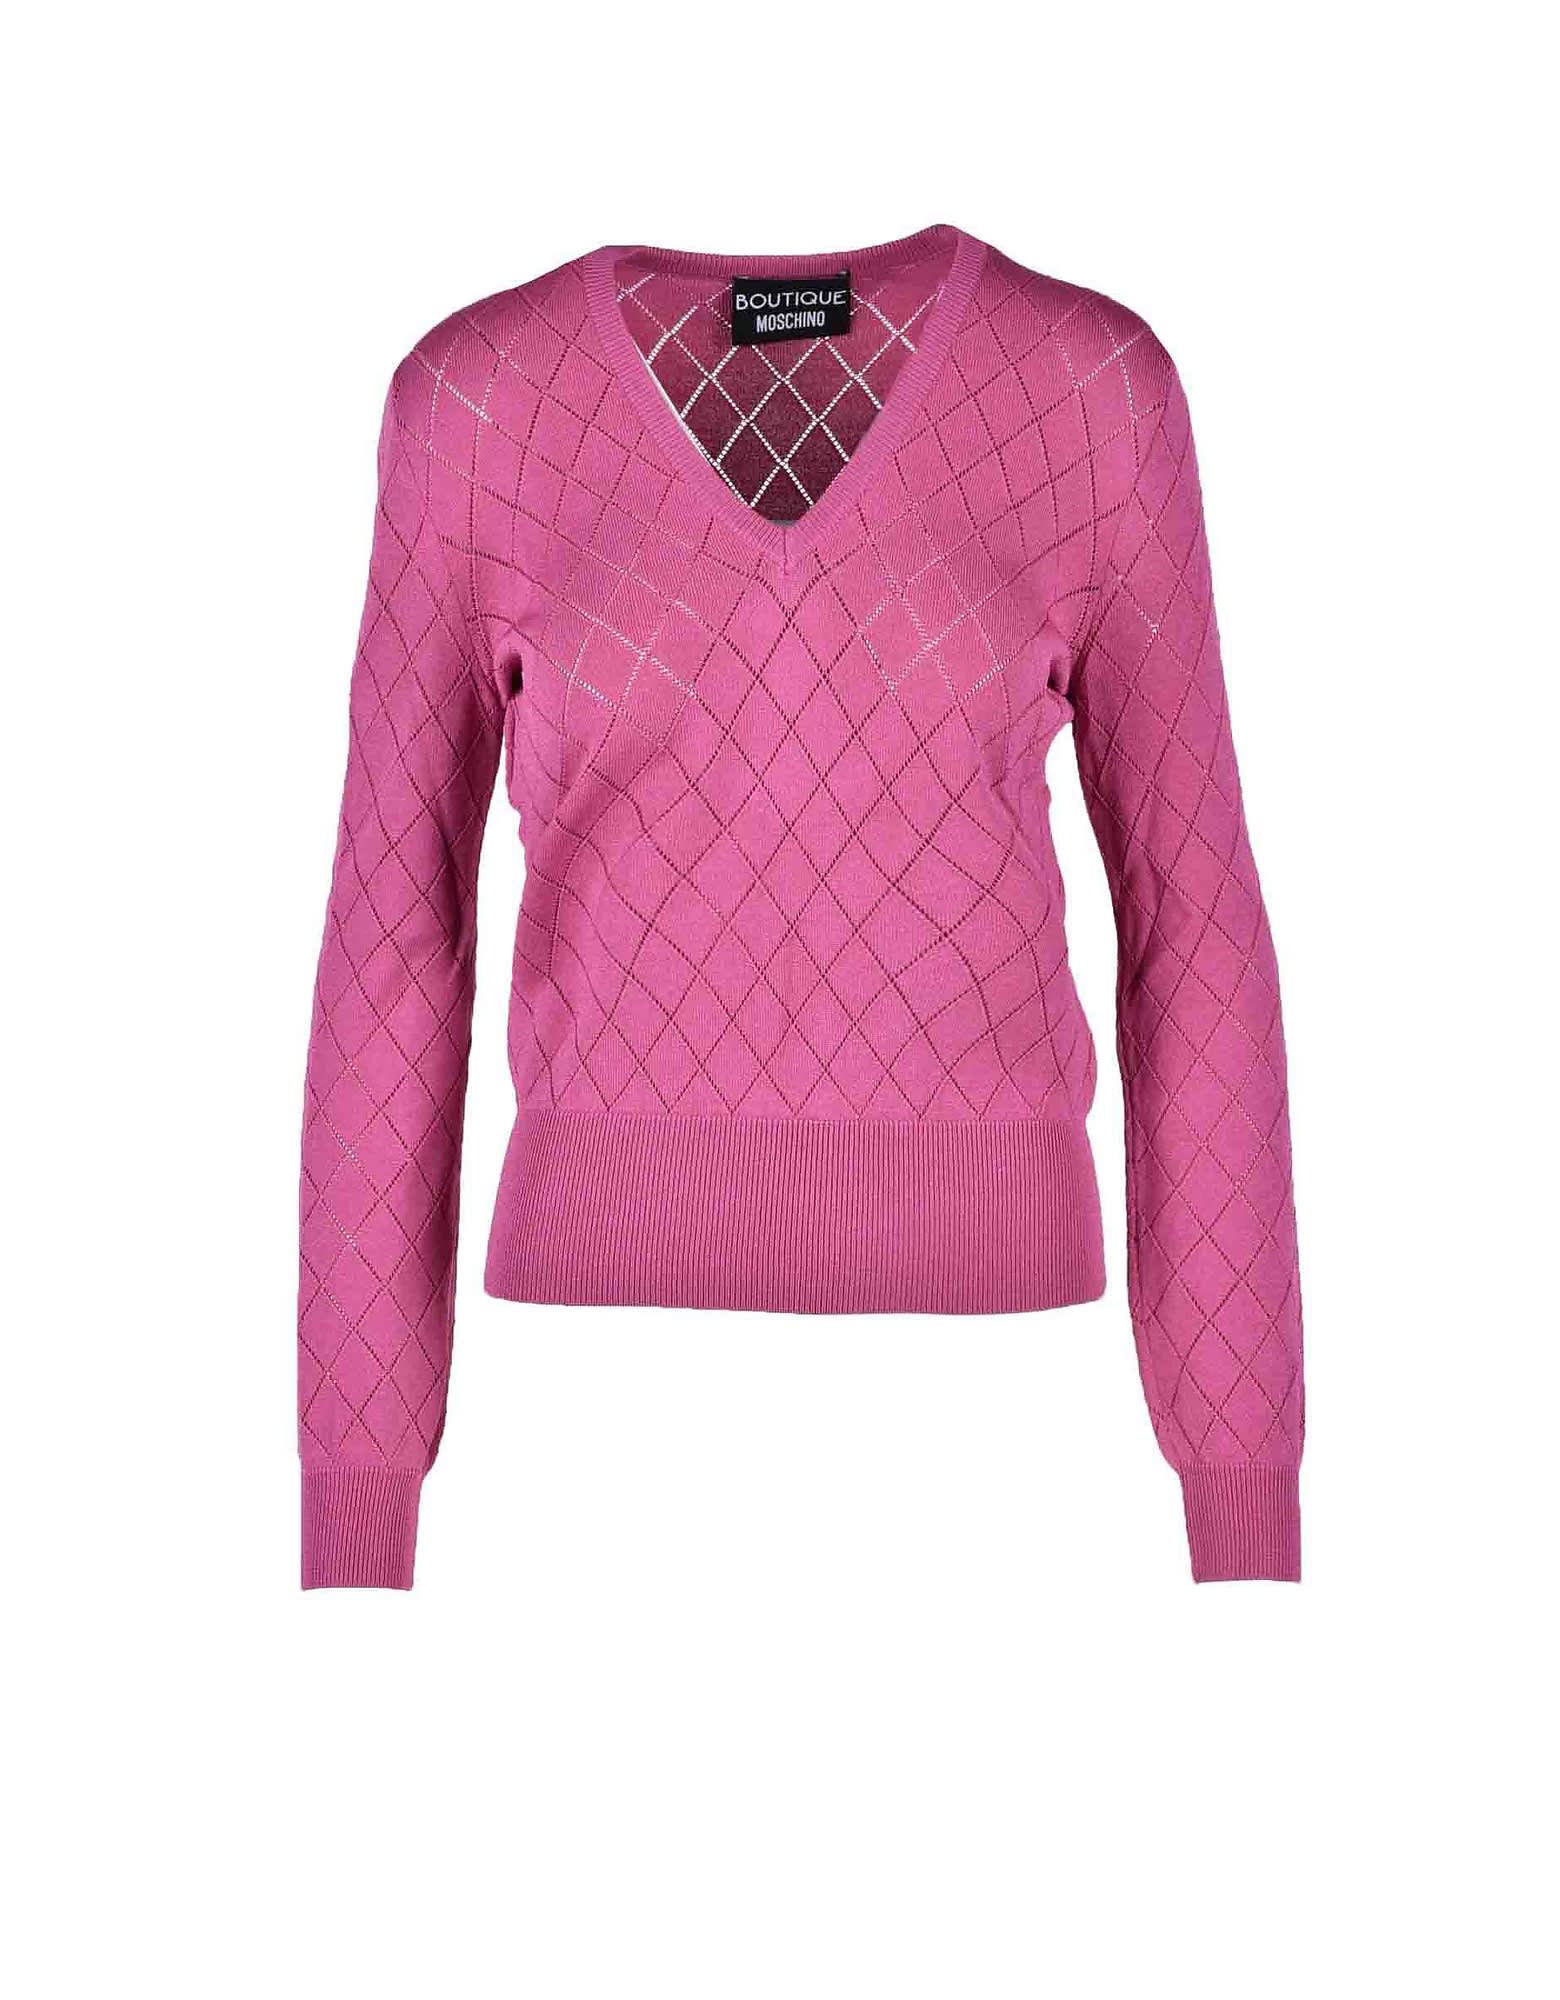 Moschino Womens Fuchsia Sweater